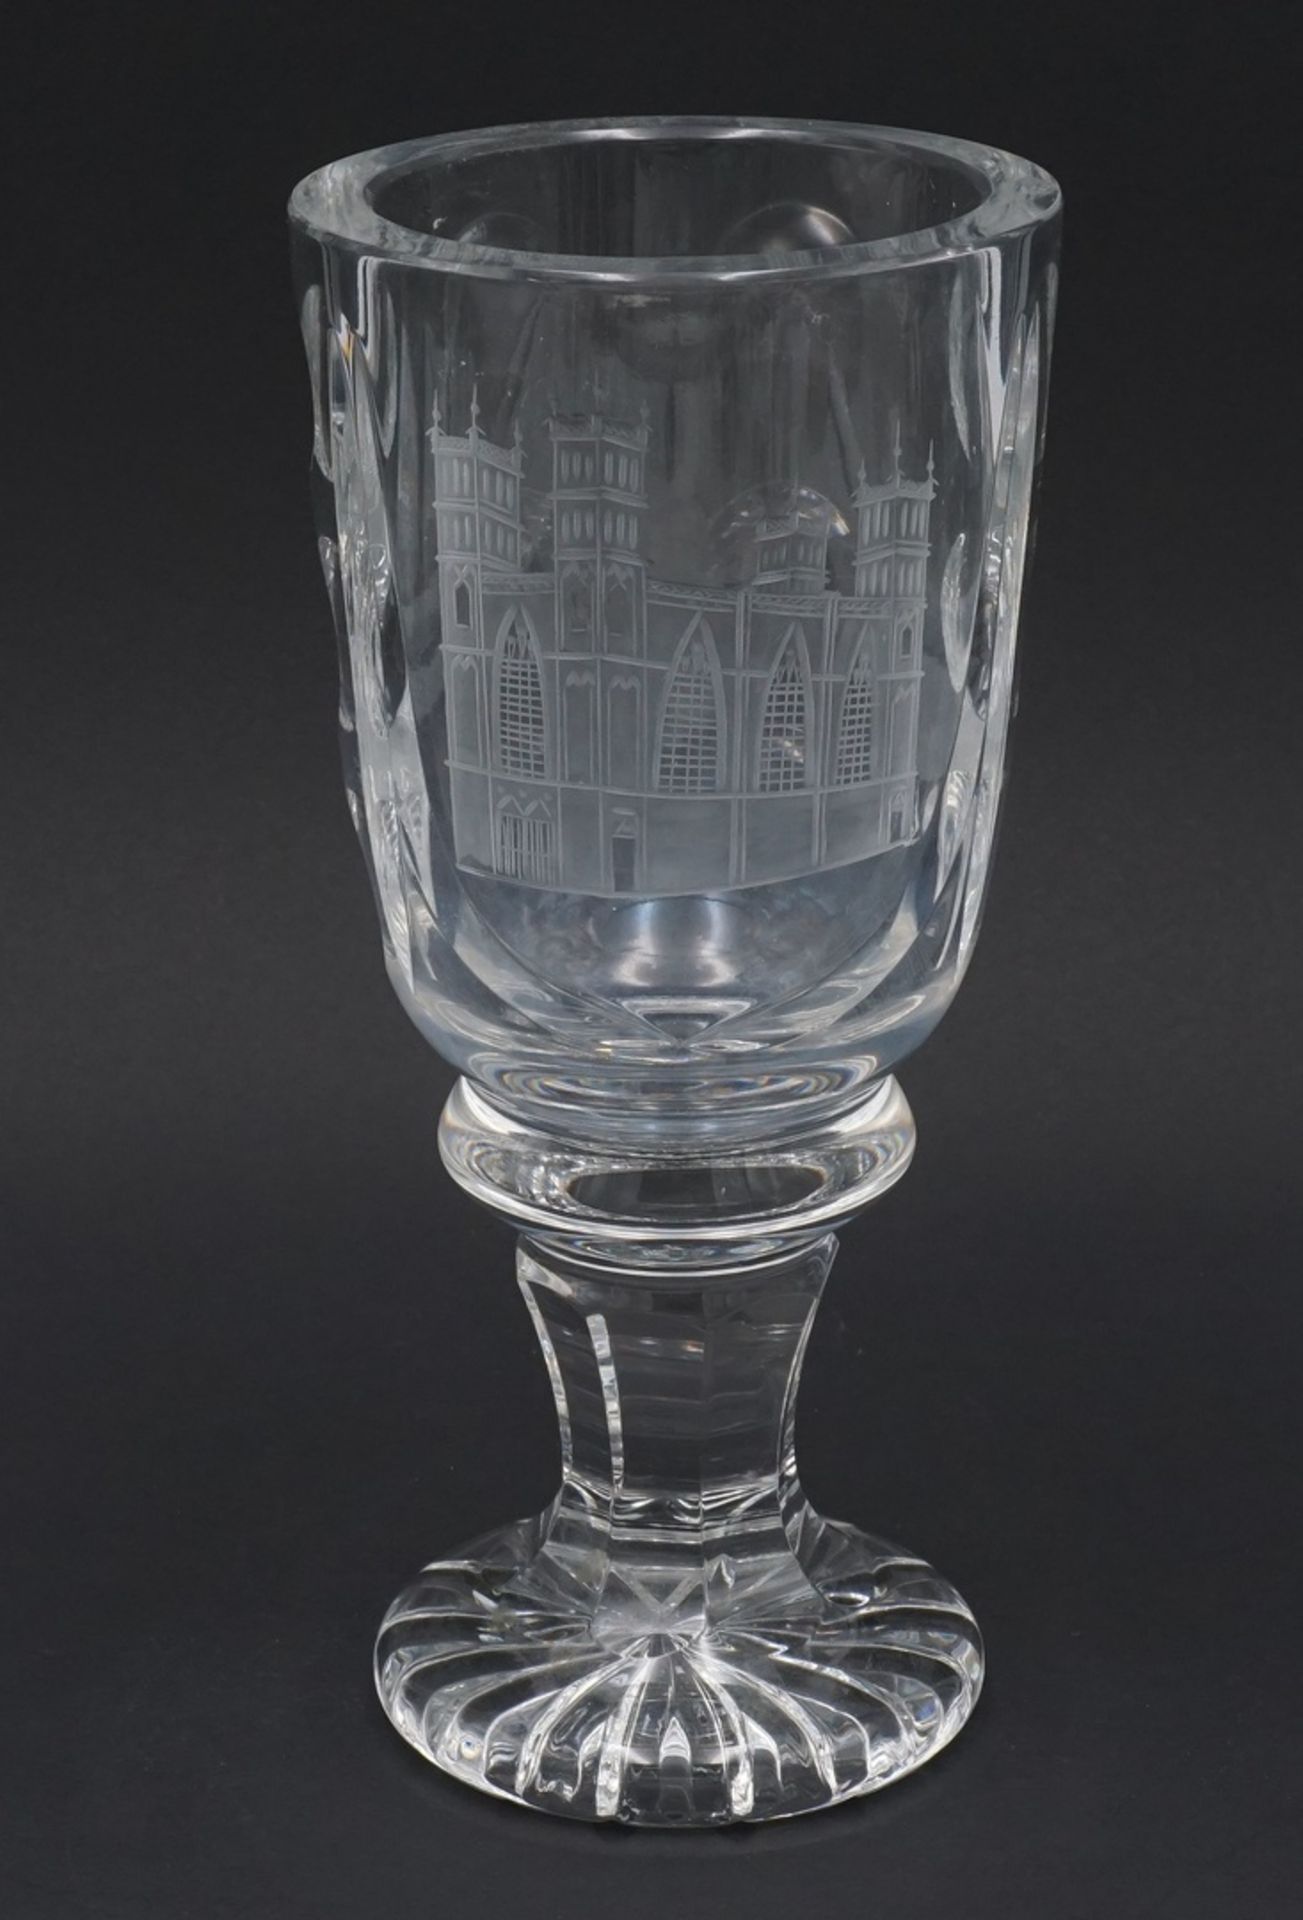 Pokalglas / Andenkenglas mit gravierter Kathedrale, 19/20. Jh.Kristallglas, runder Stand mit